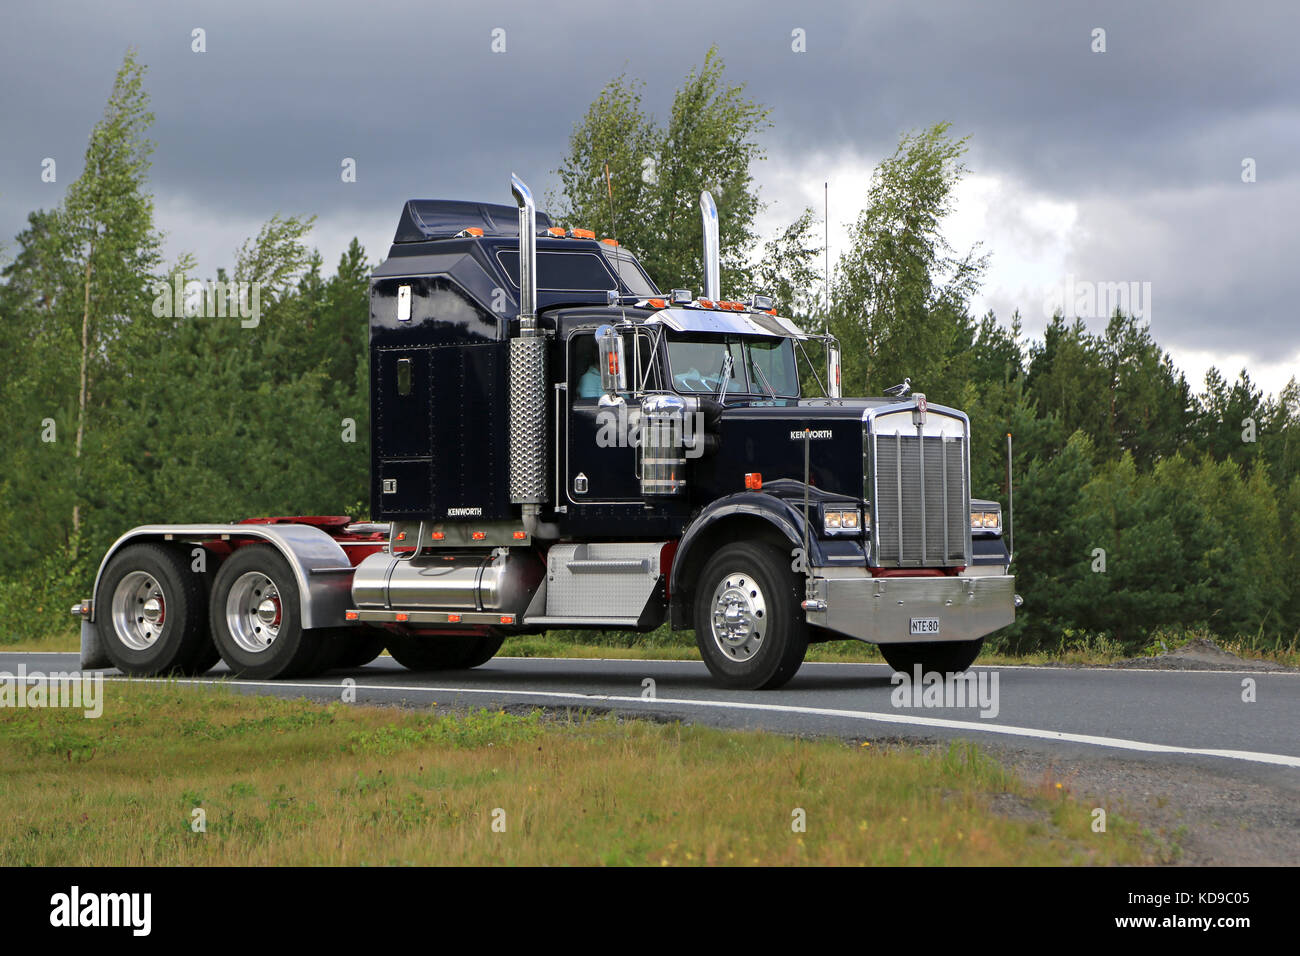 LEMPAALA, FINNLAND - 11. AUGUST 2016: Der klassische Kenworth W900B fährt im Rahmen des LKW-Konvois zum jährlichen Trucking-Event Power TR entlang der Autobahn Stockfoto